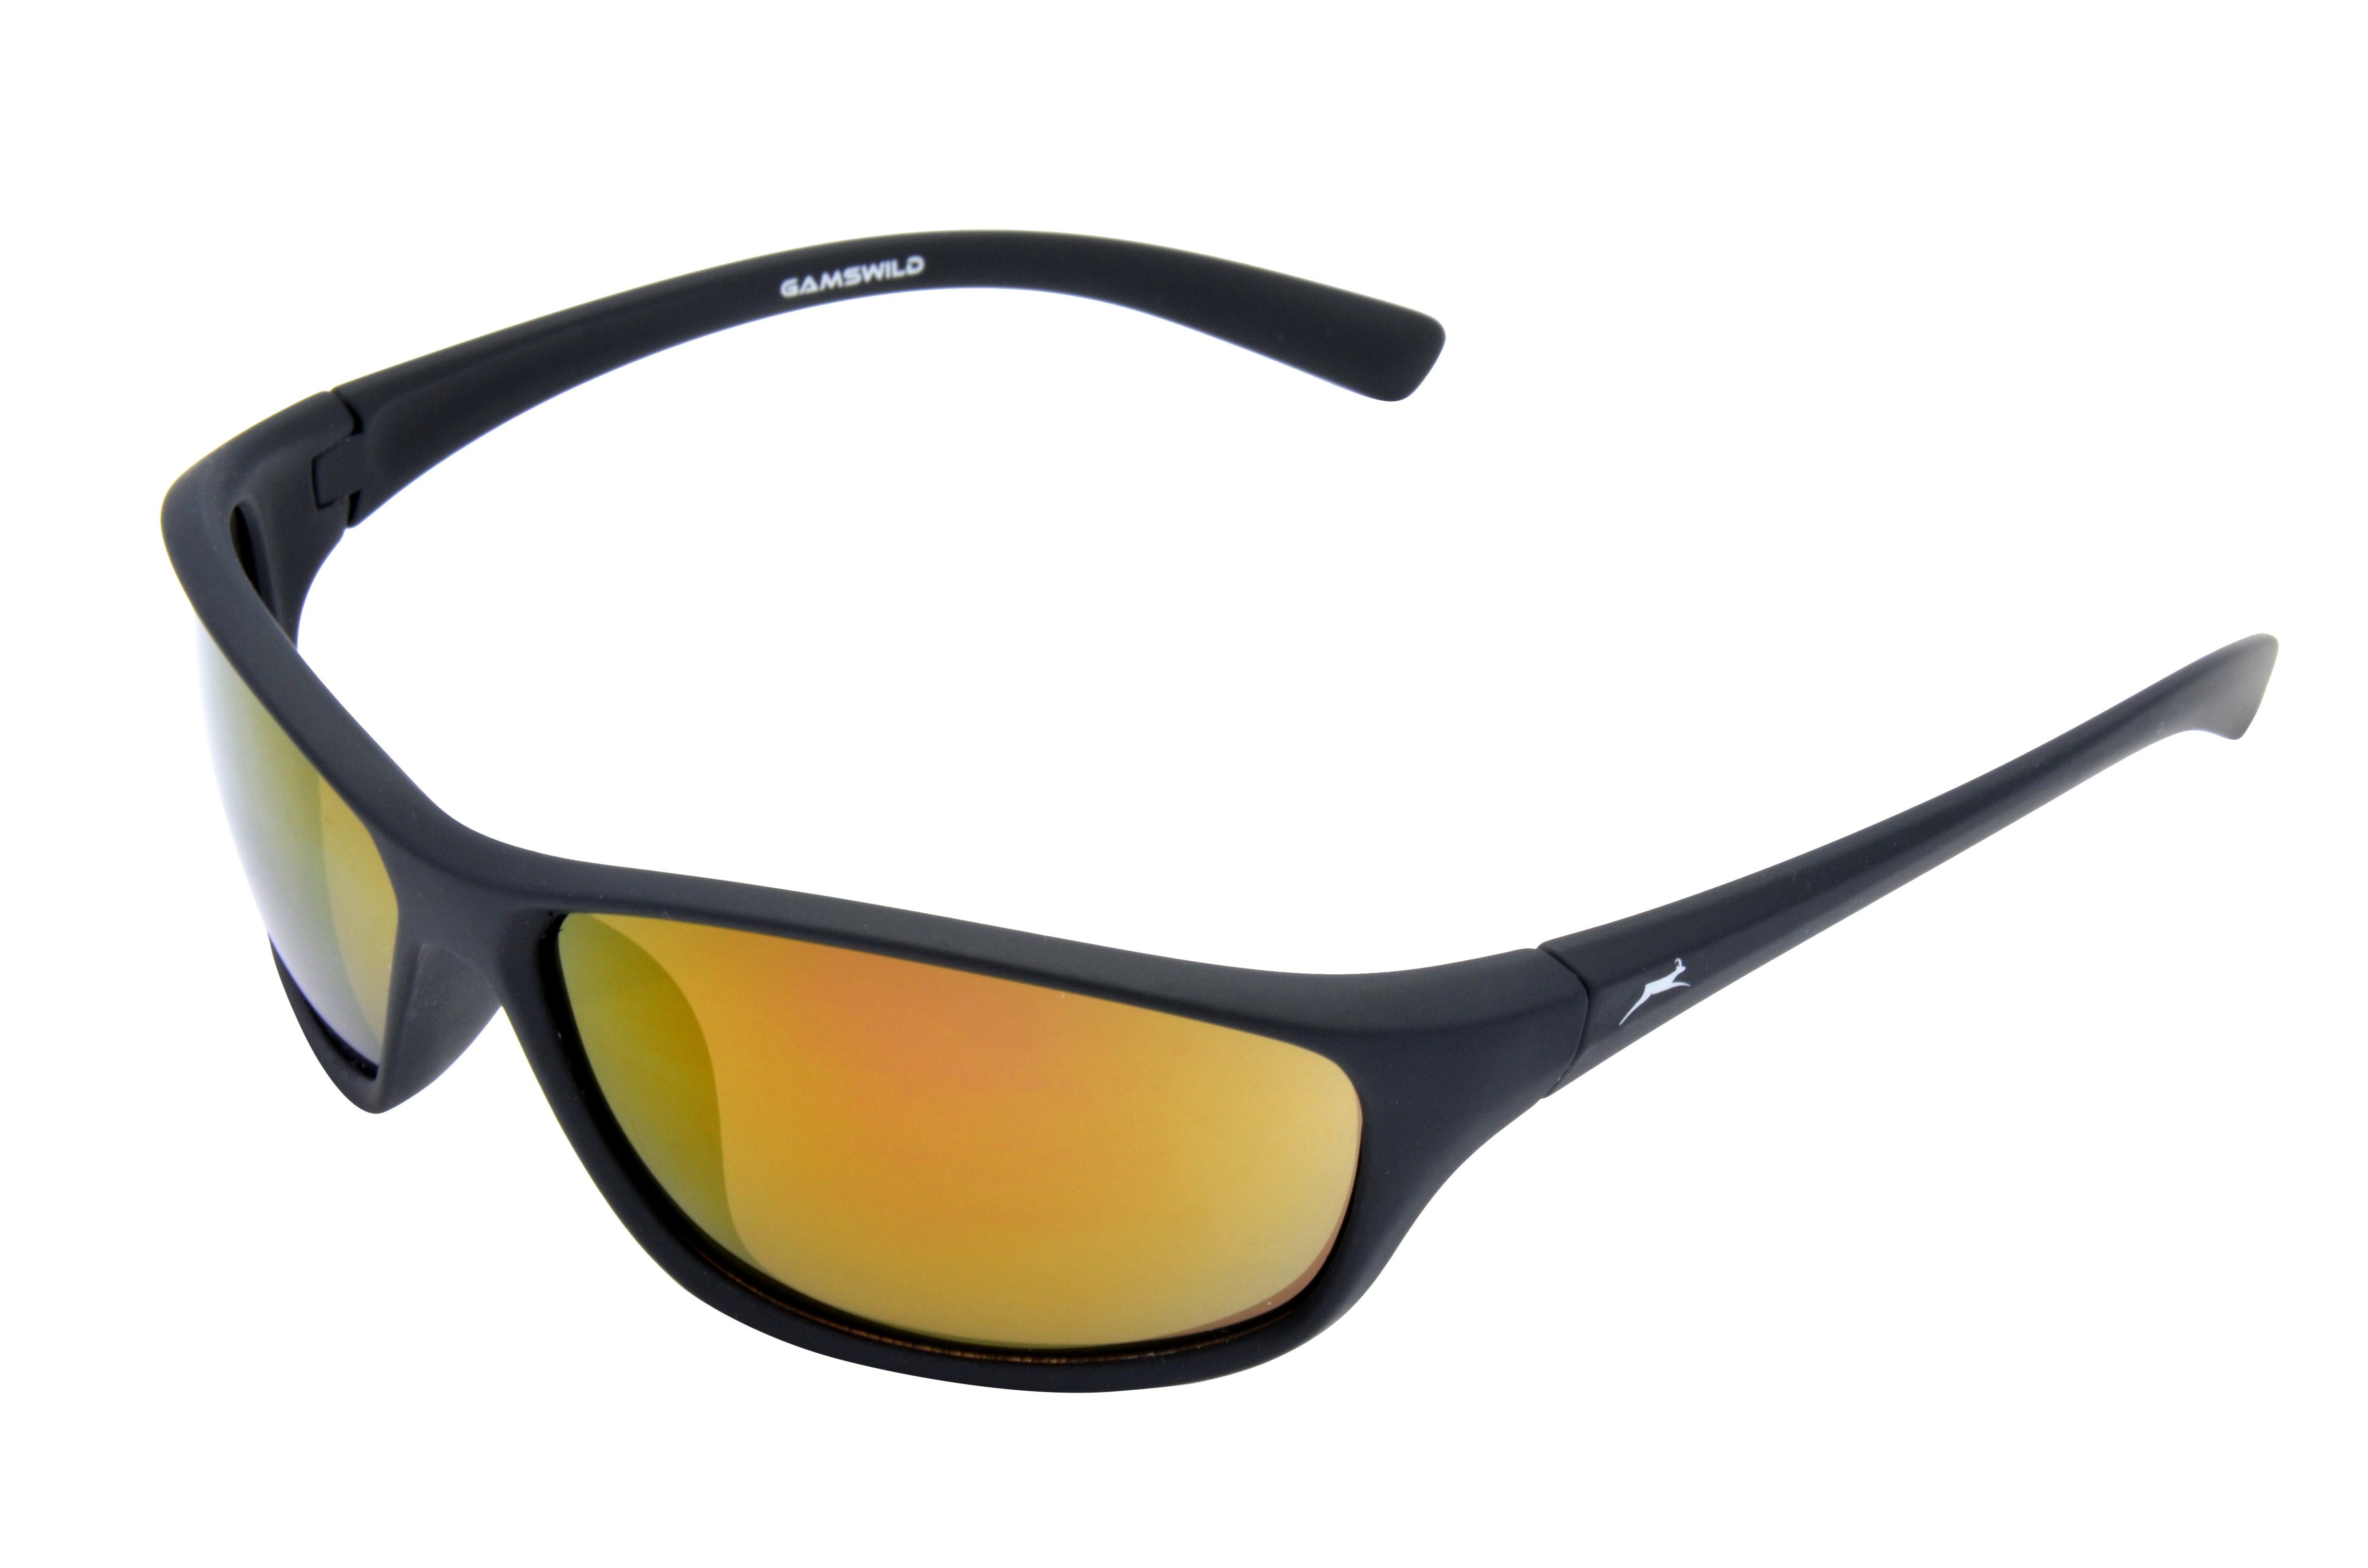 Gamswild Sonnenbrille WS6426 Sportbrille Damen grün, braun, violett Herren Unisex, Softtouch Skibrille Fahrradbrille